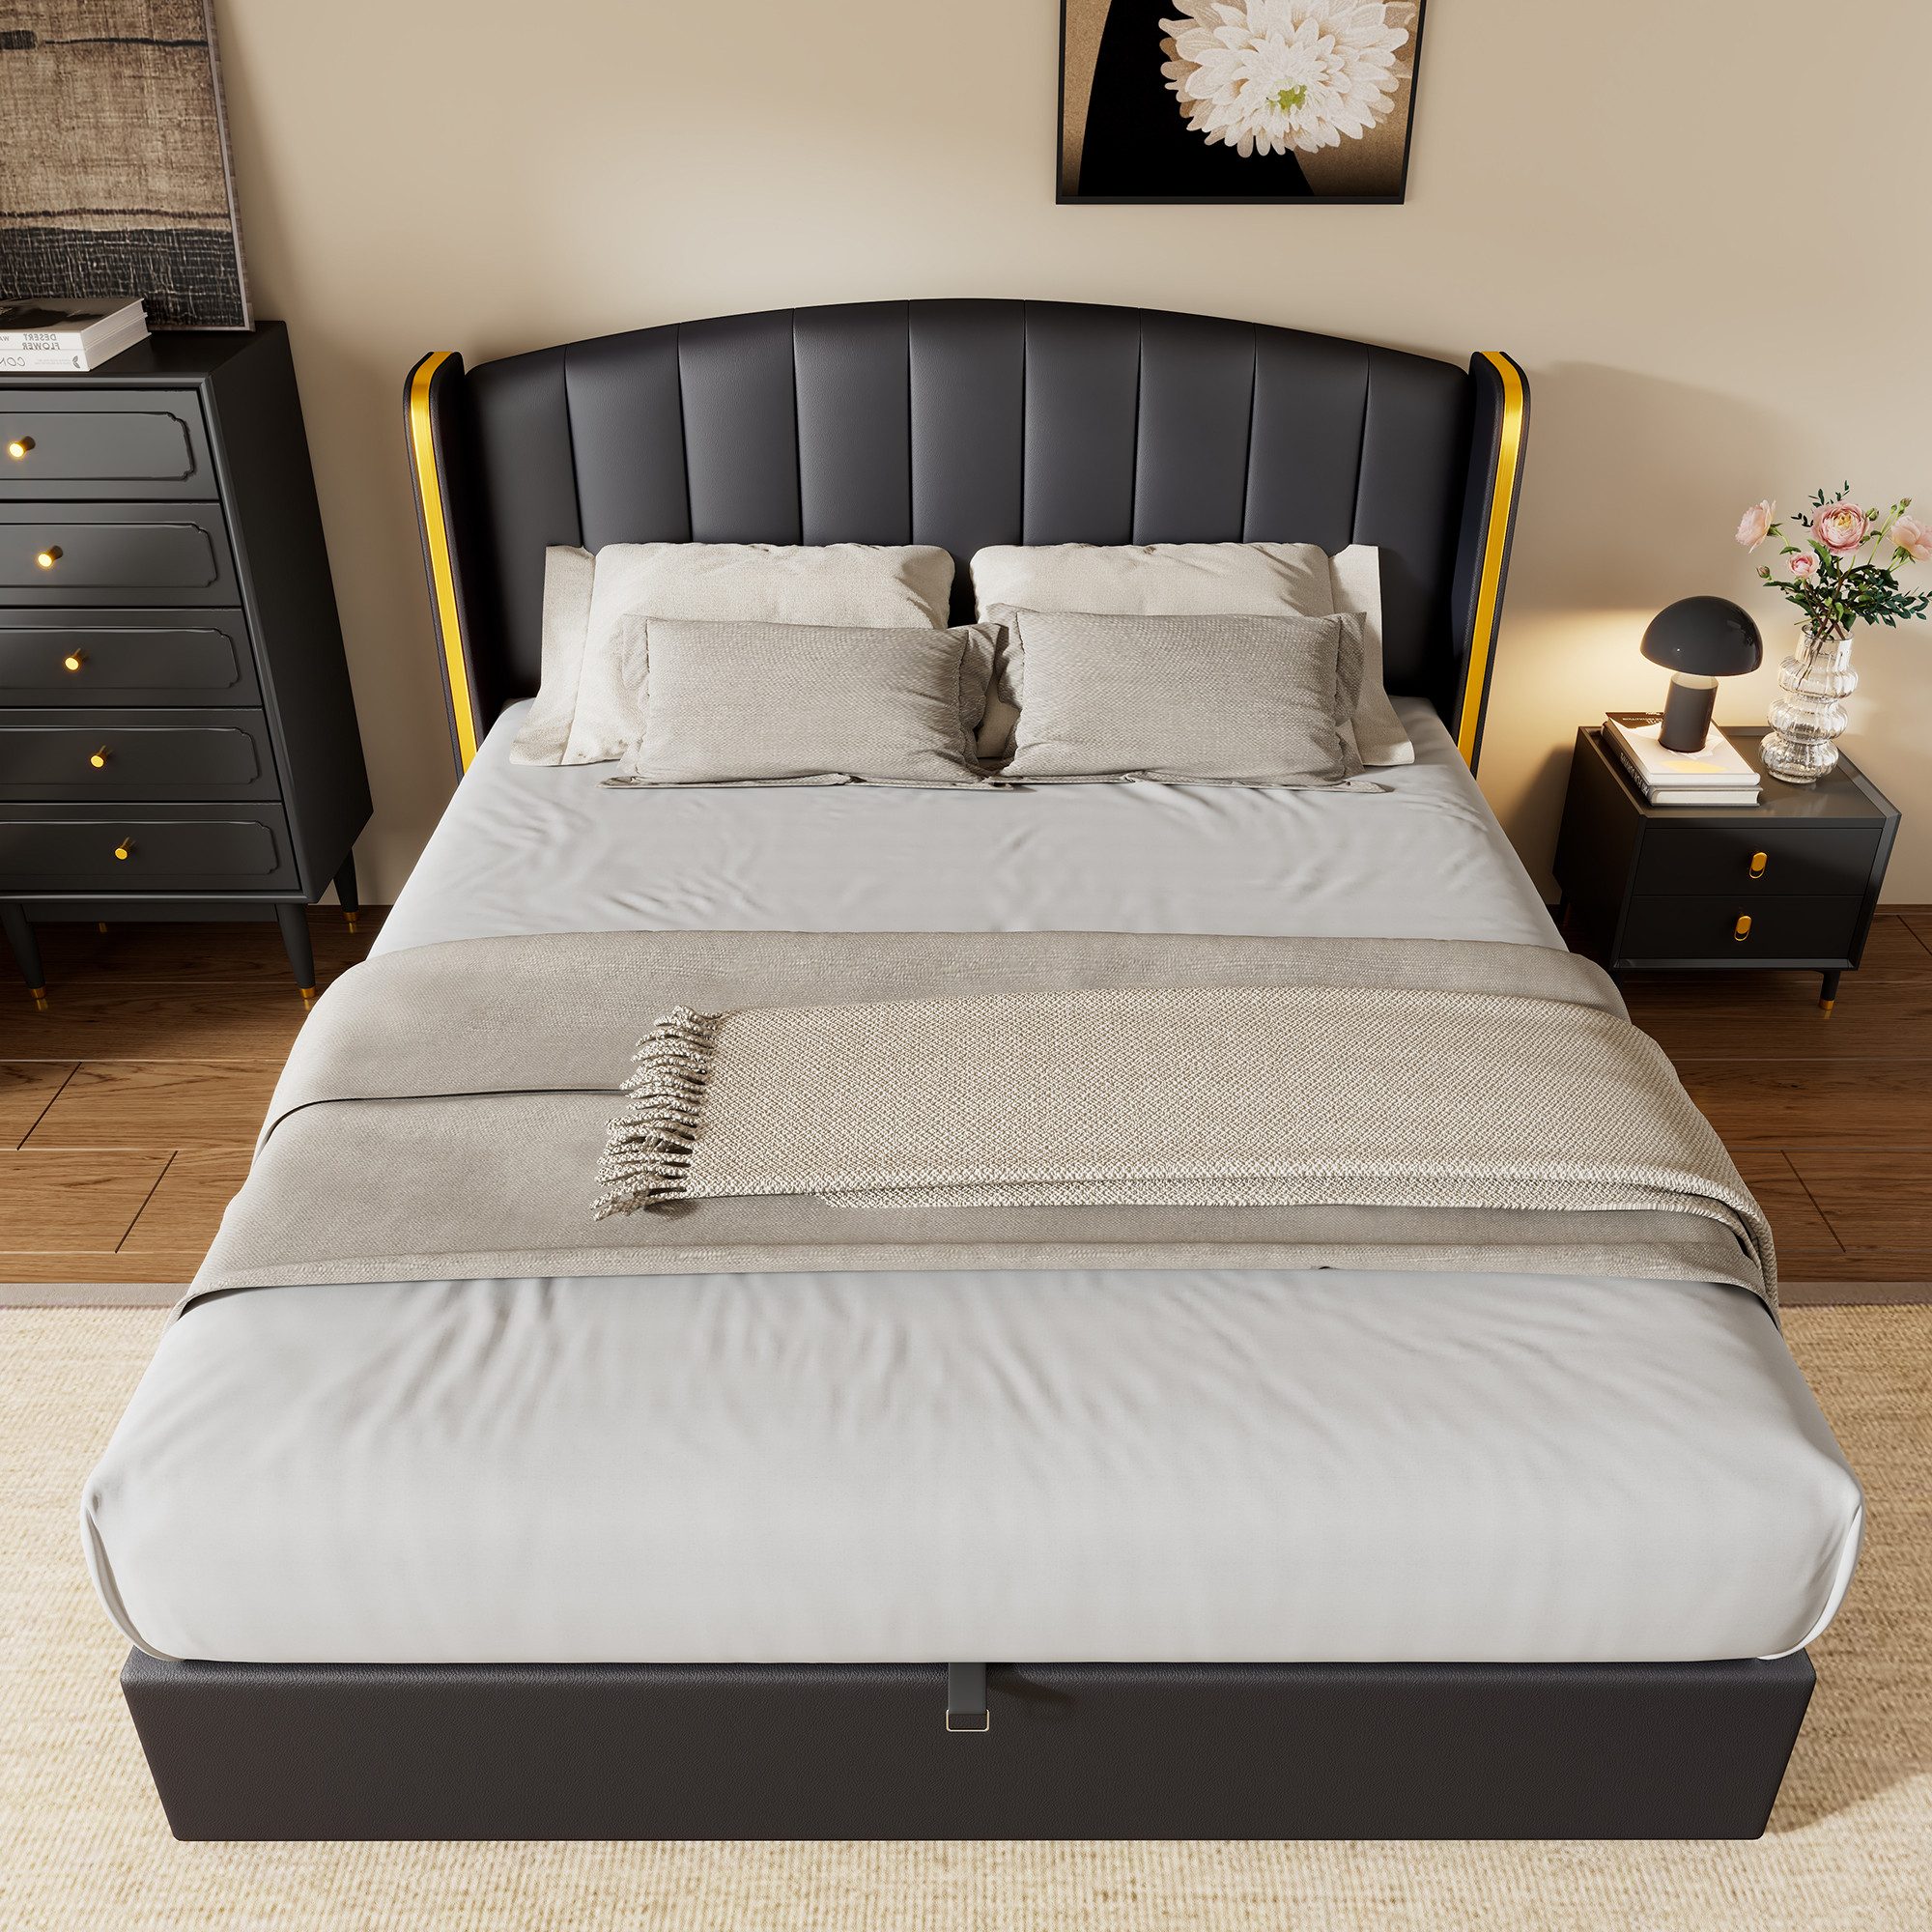 OKWISH Polsterbett Hydraulisches Bett (180*200cm), mit goldgerandetes Ohrendesign, Bettkasten, Lattenrost und Kopfteil